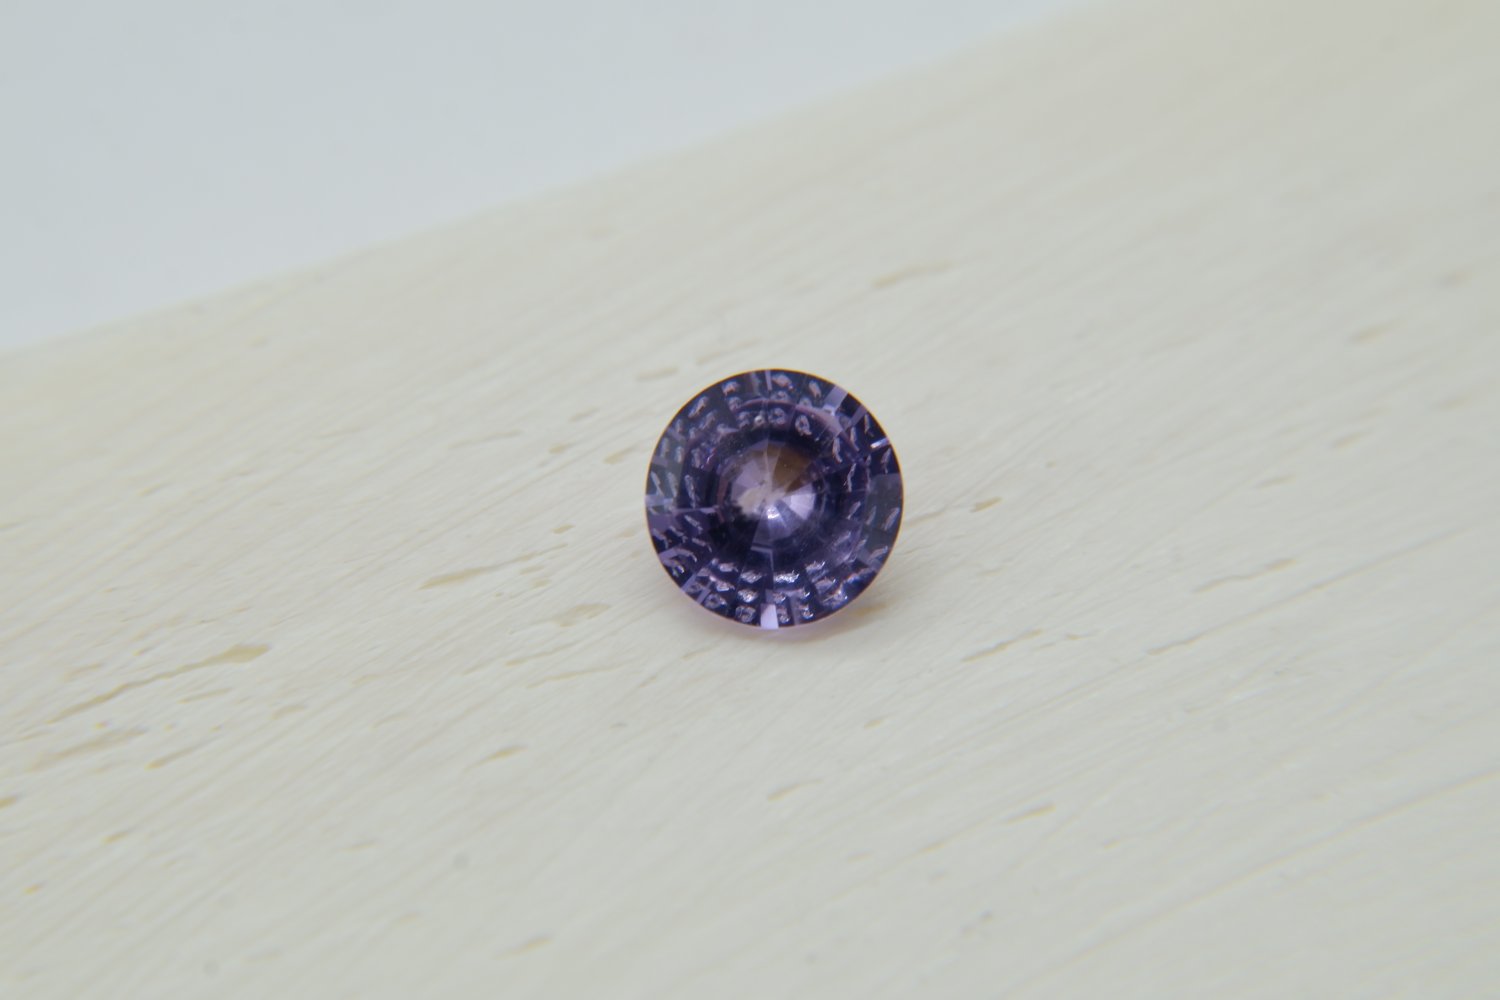  APPRAISED PREMIUM: Vivid Violet Sapphire premium handcrafted calibrated cut, brilliance round cut S